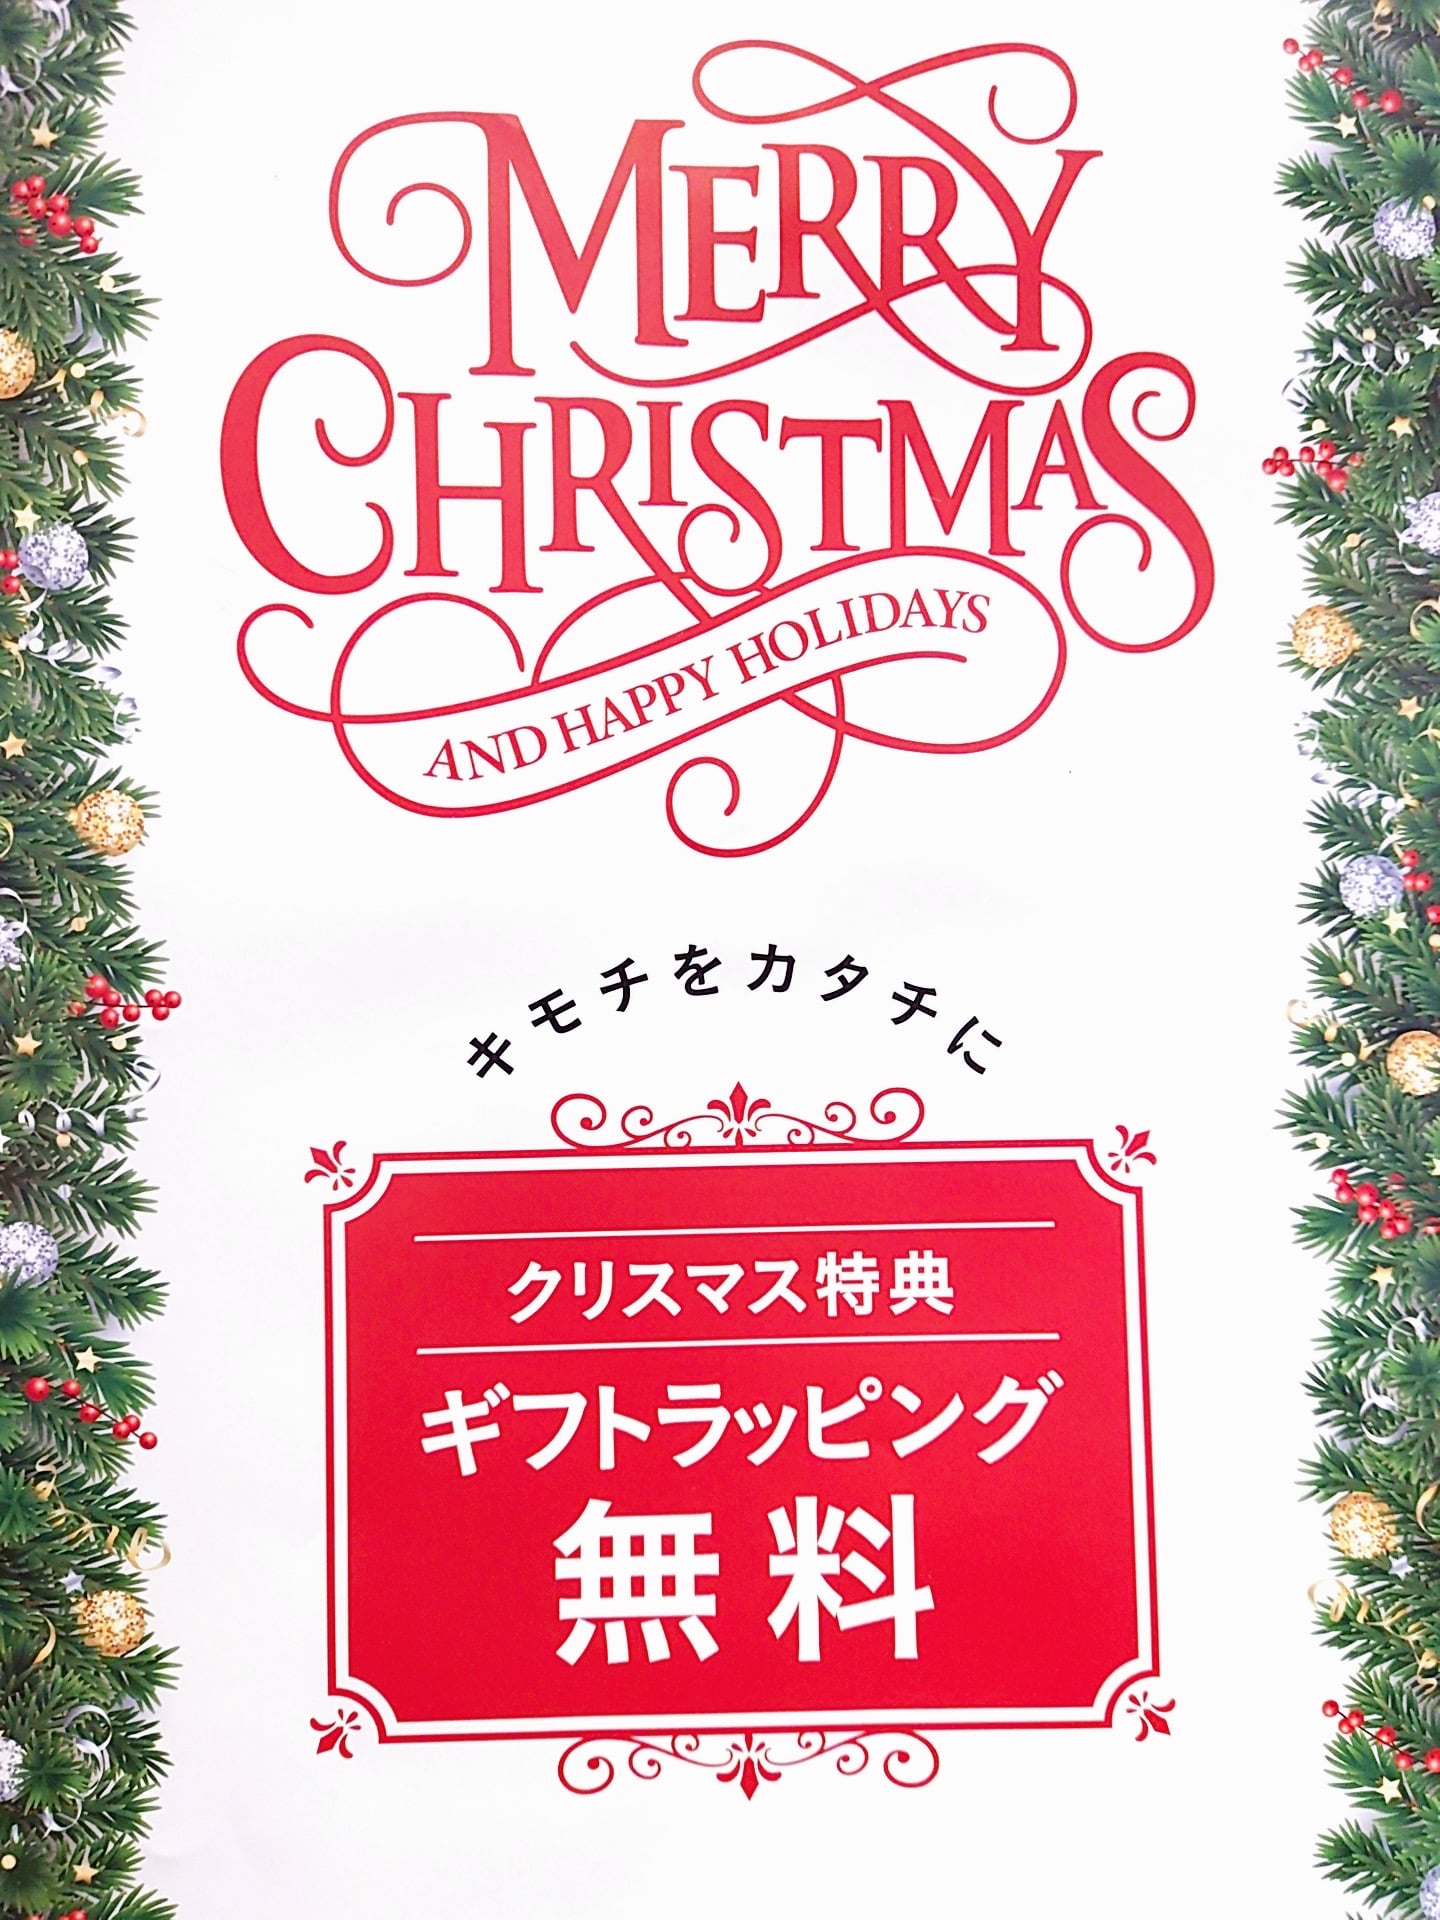 【mf札幌発寒店】クリスマスギフトのオススメ